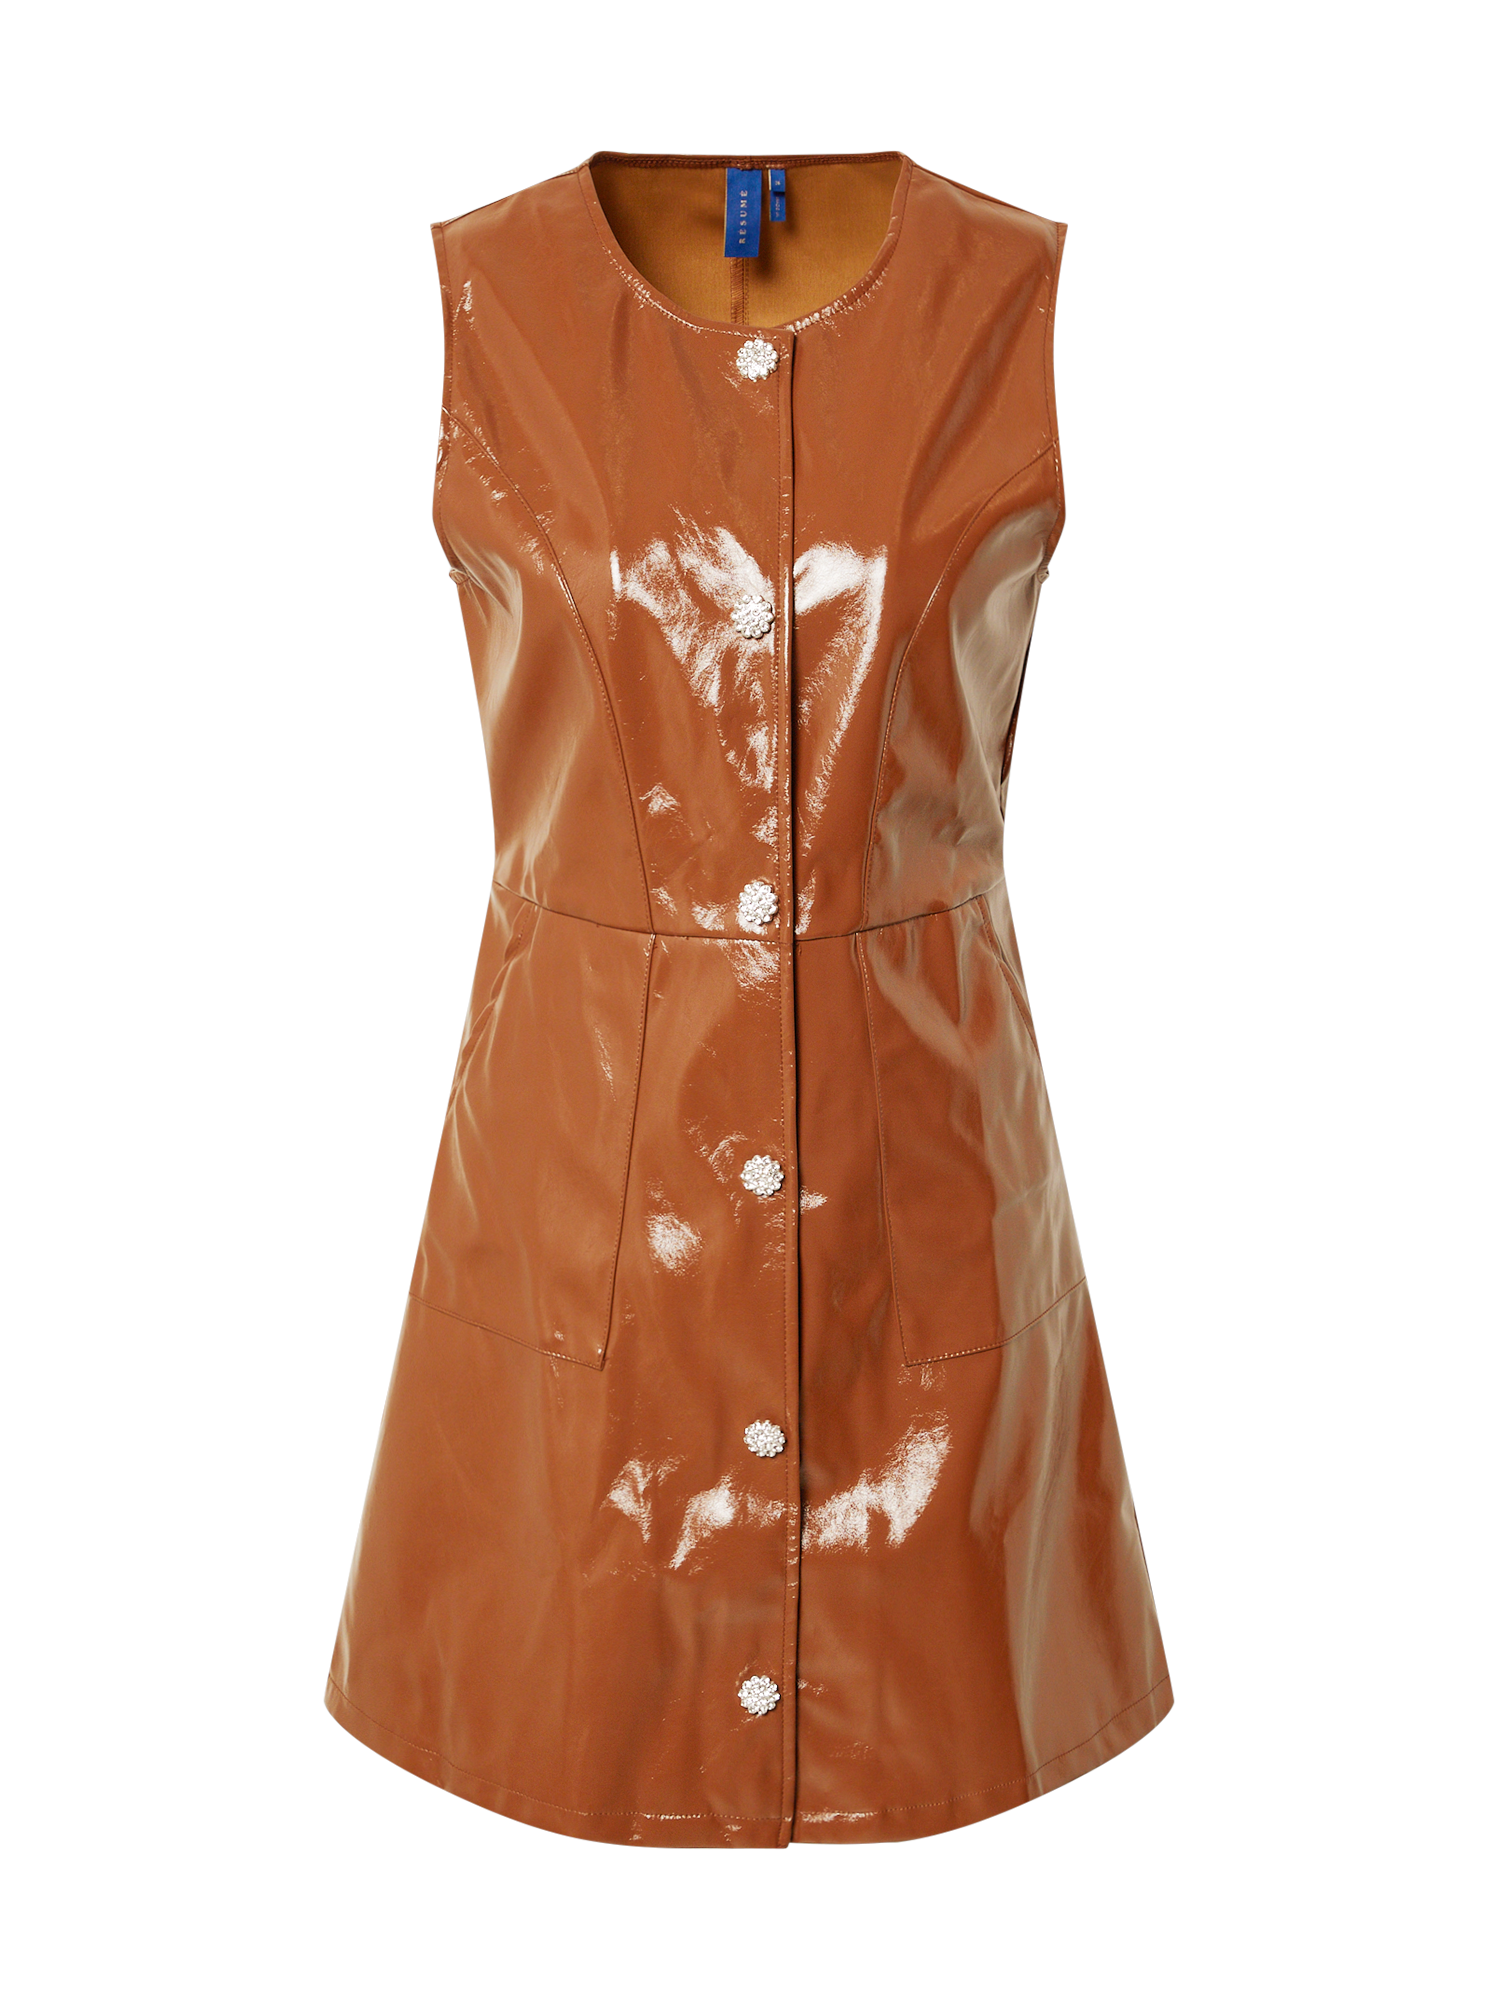 Odzież Rp4ny Résumé Sukienka Gianna w kolorze Brązowym 